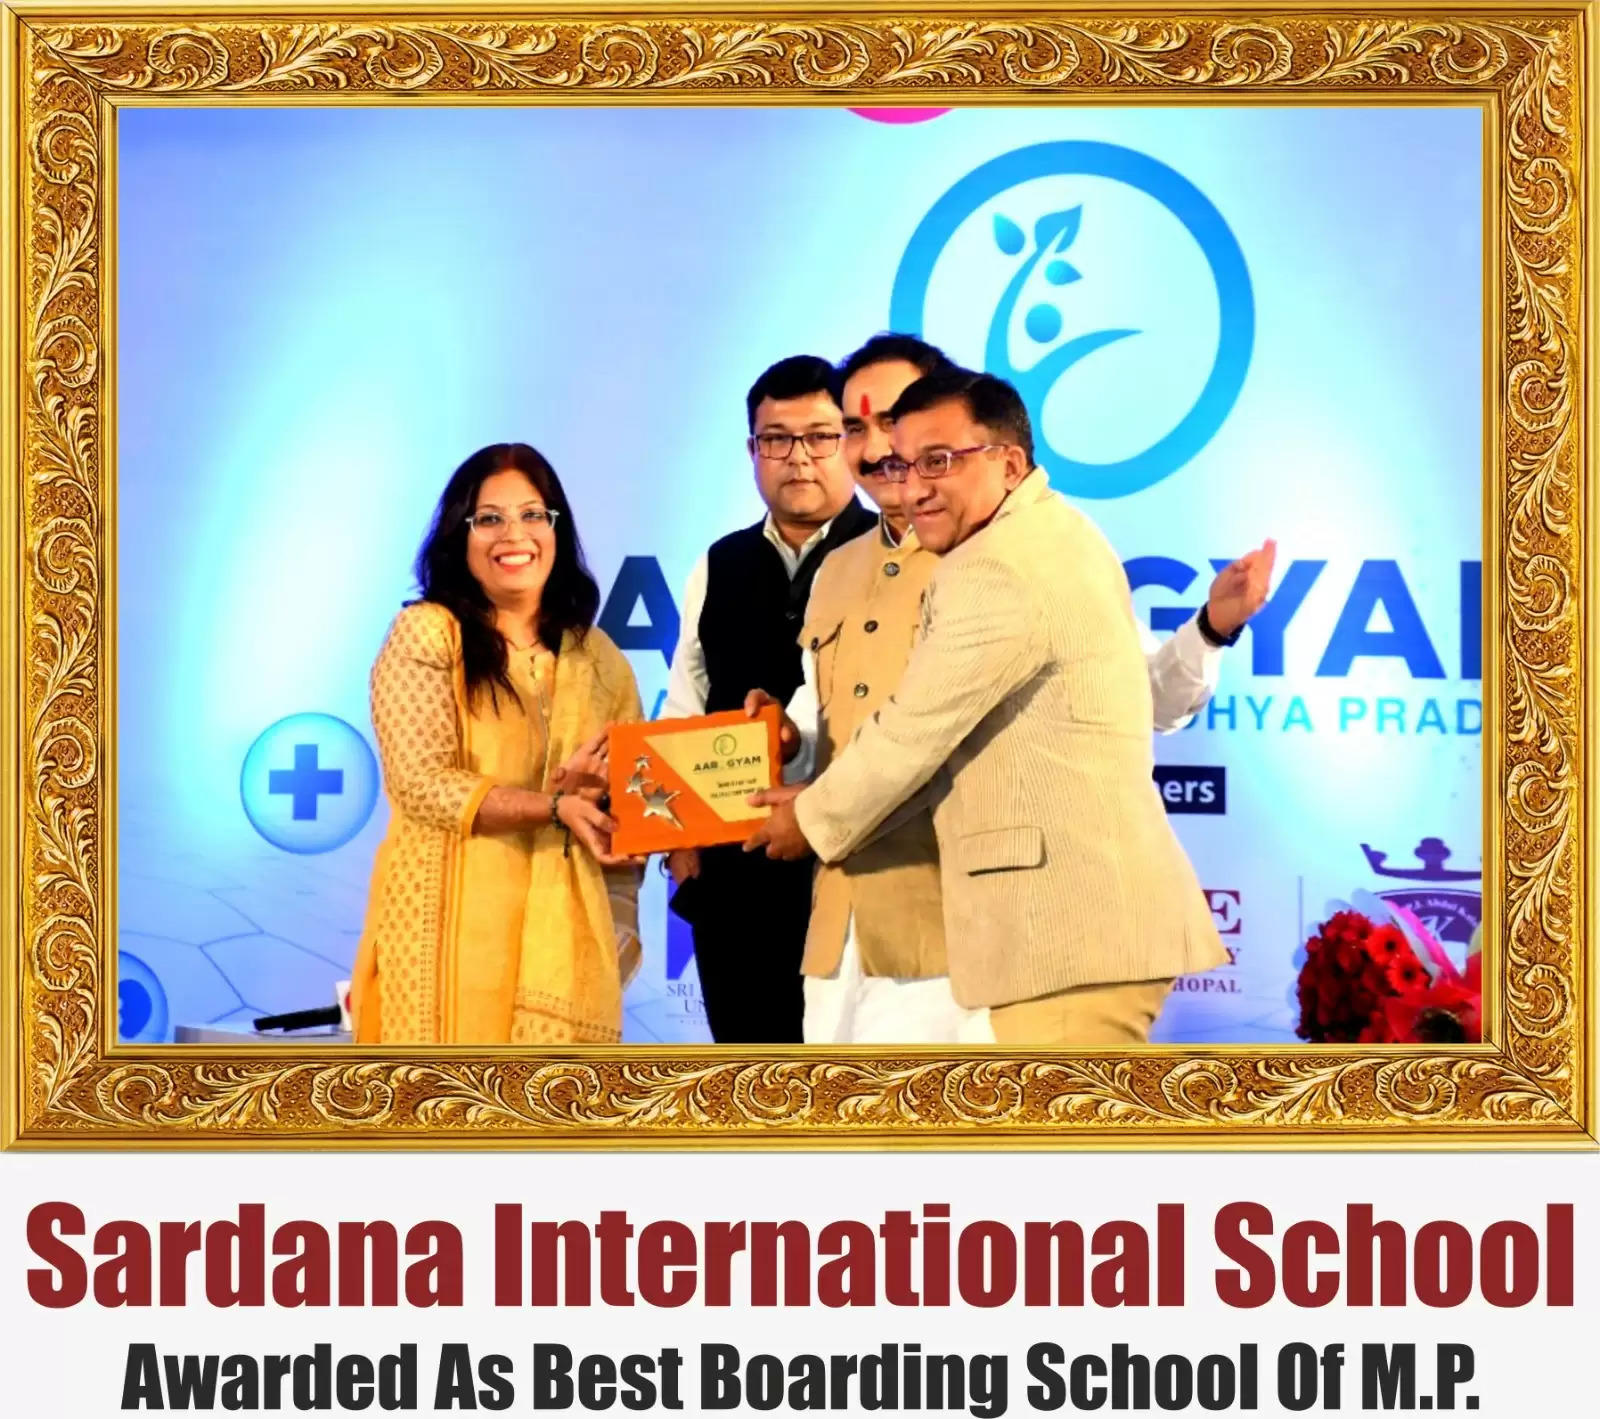 सरदाना इंटरनेशनल स्कूल को मिला मध्य प्रदेश के सर्वश्रेष्ठ बोर्डिंग स्कूल का पुरस्कार